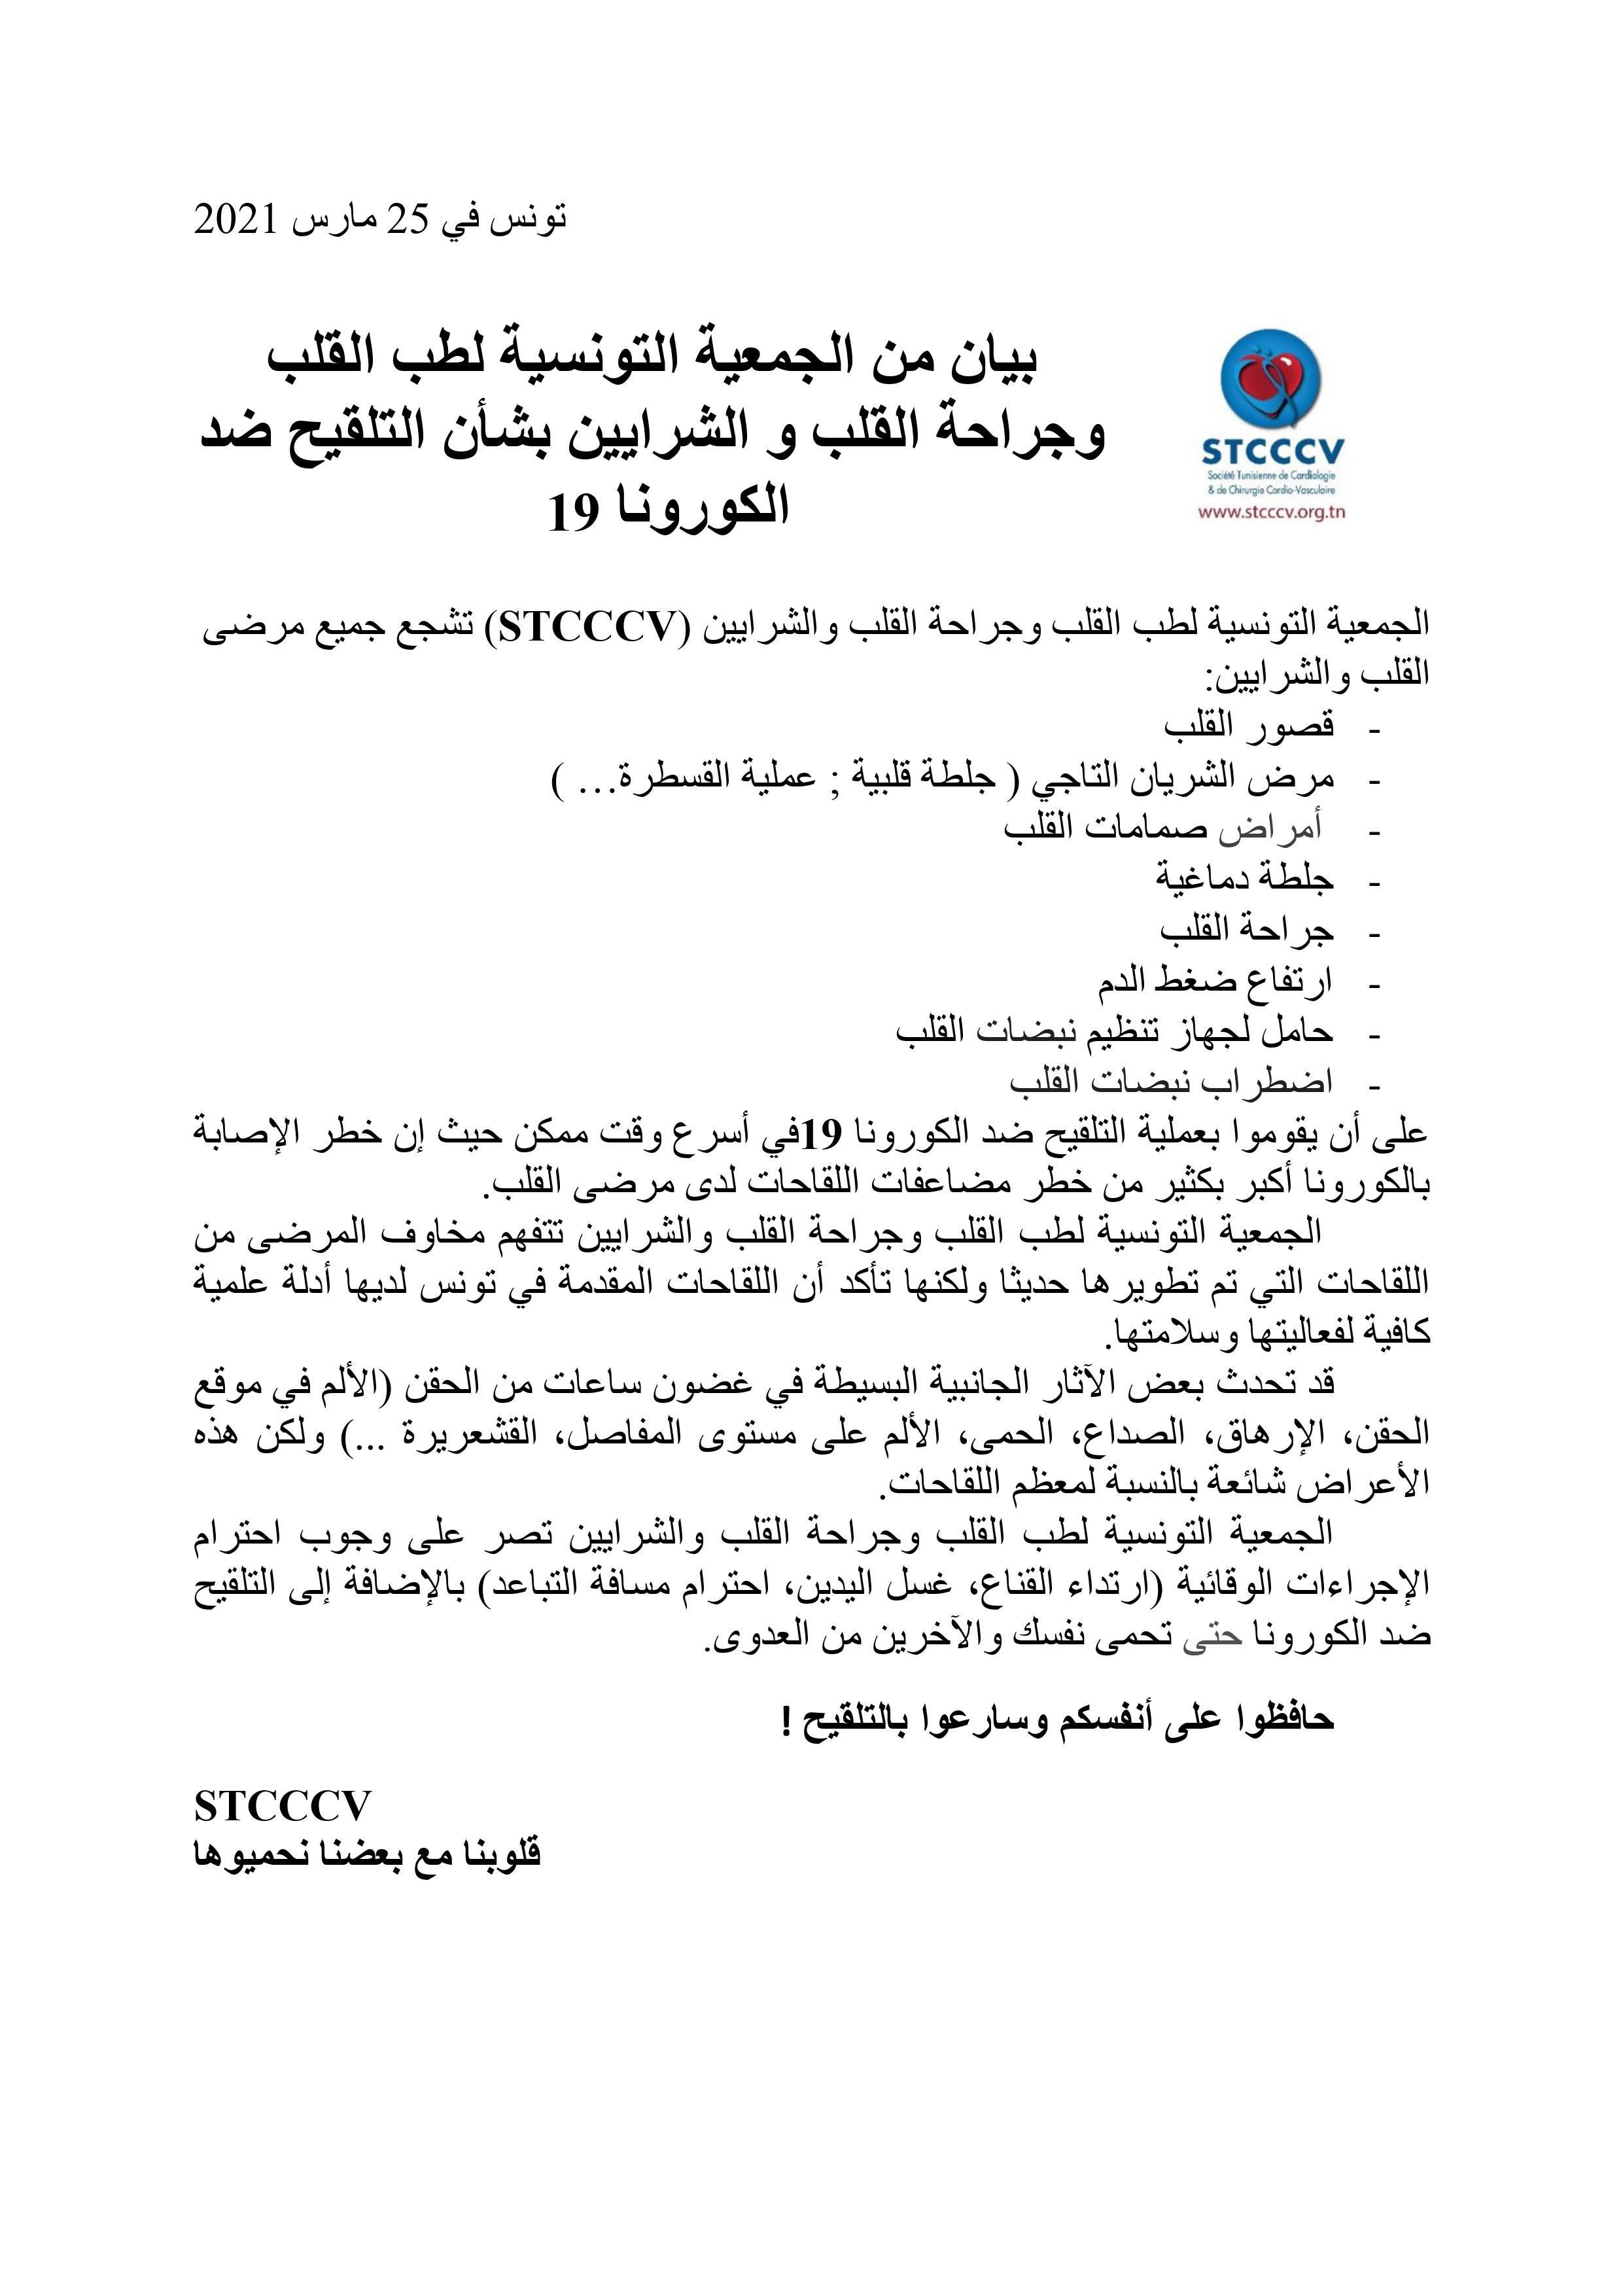 بيان من الجمعية التونسية لطب القلب وجراحة القلب و الشرايين بشأن التلقيح ضد الكورونا 19 - STCCCV